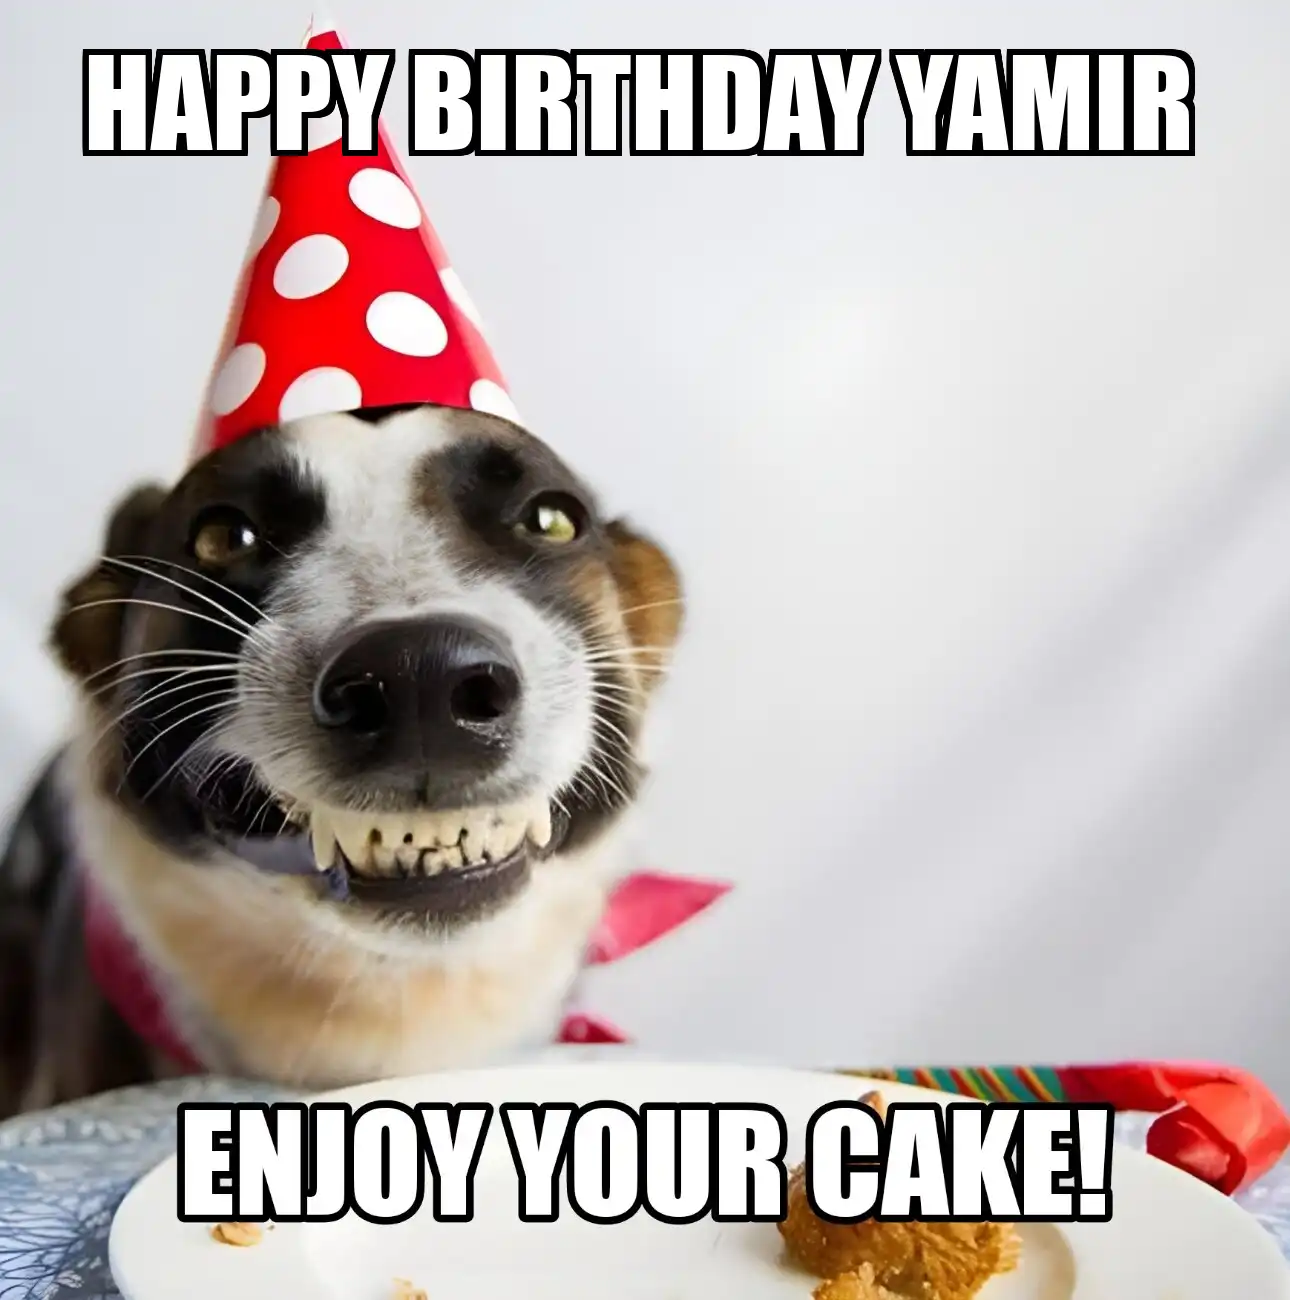 Happy Birthday Yamir Enjoy Your Cake Dog Meme